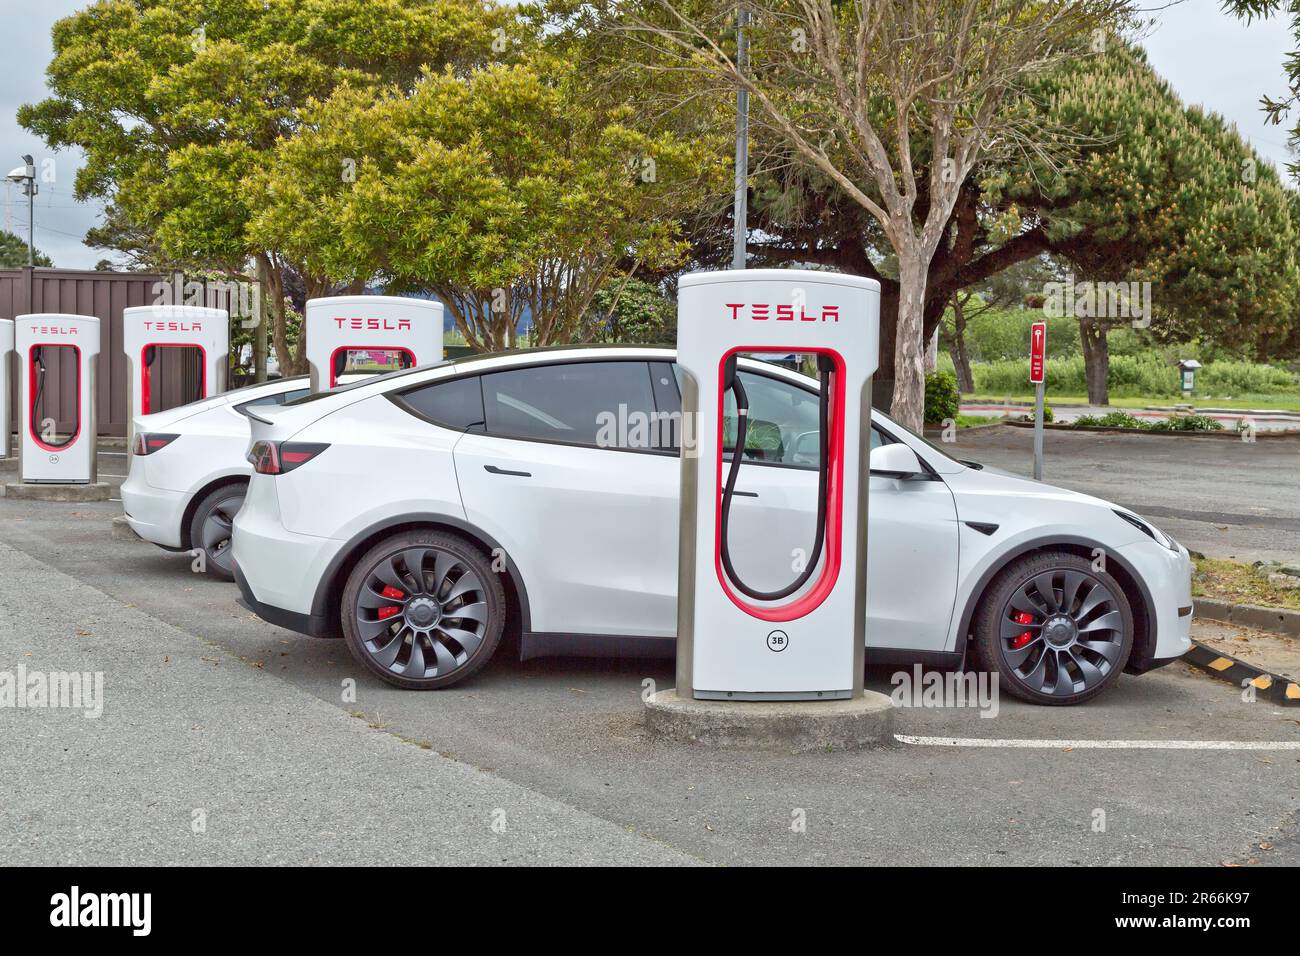 Stations de Supercharger Tesla, convertit 480V AC en 360V DC pour le modèle S, côte ouest de la Californie. Banque D'Images